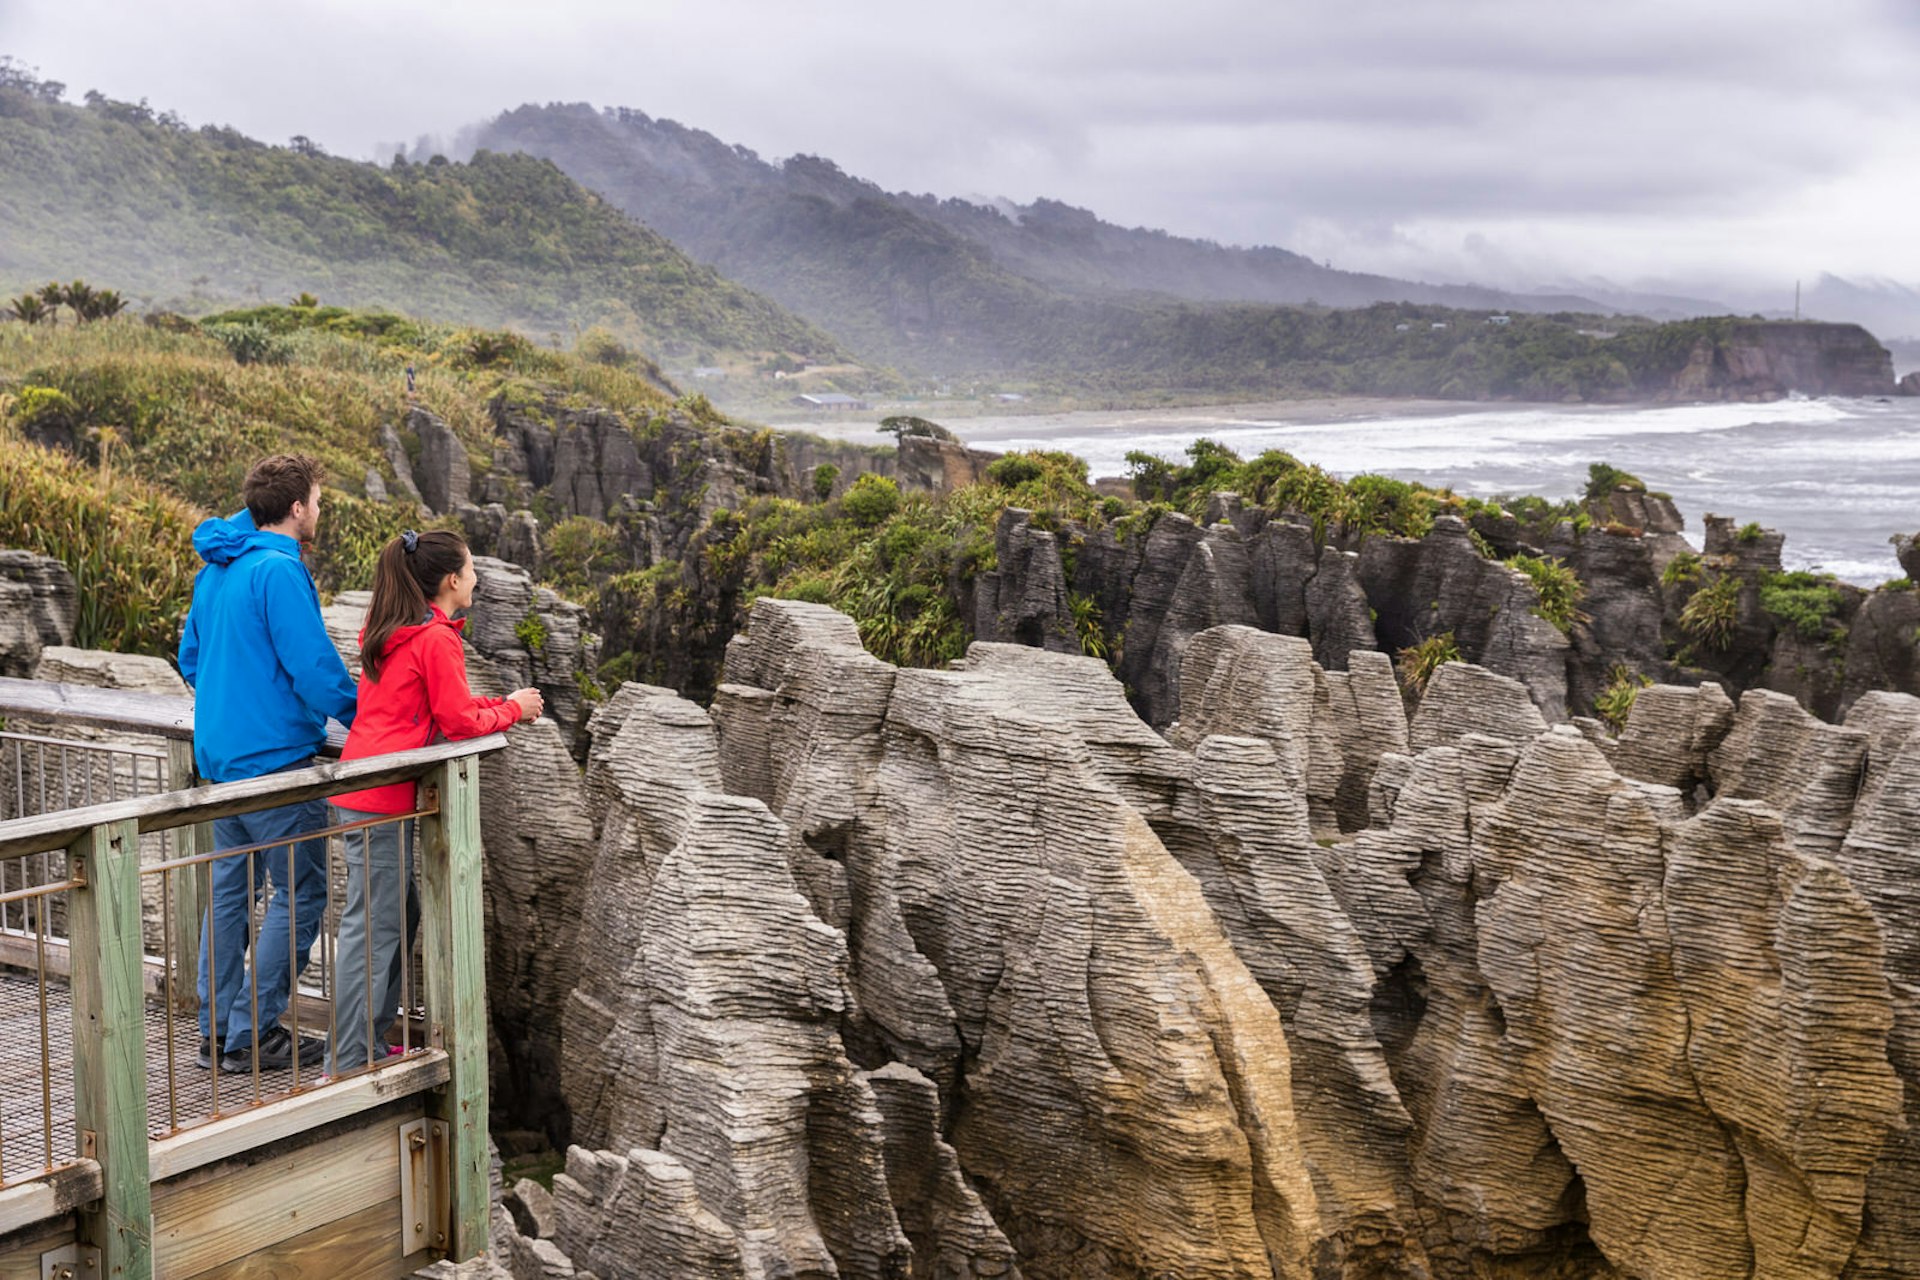 Punakaiki Pancake Rocks, New Zealand © Maridav / Shutterstock